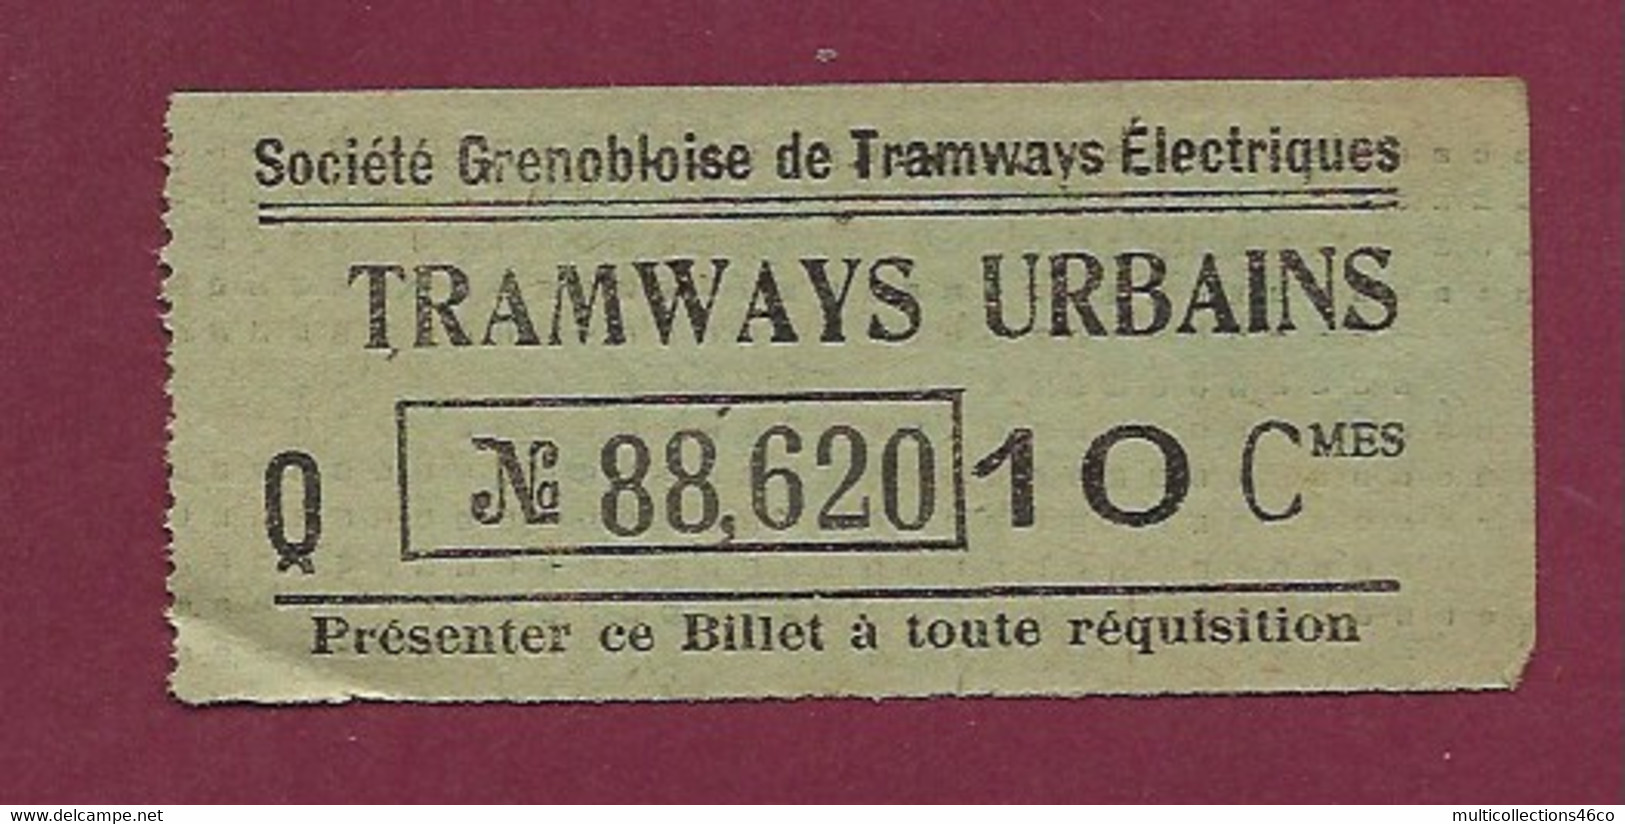 171020 - TICKET TRAMWAYS URBAINS Société Grenobloise De Tramways Electriques Q N°88,620 10 Cmes - Europa